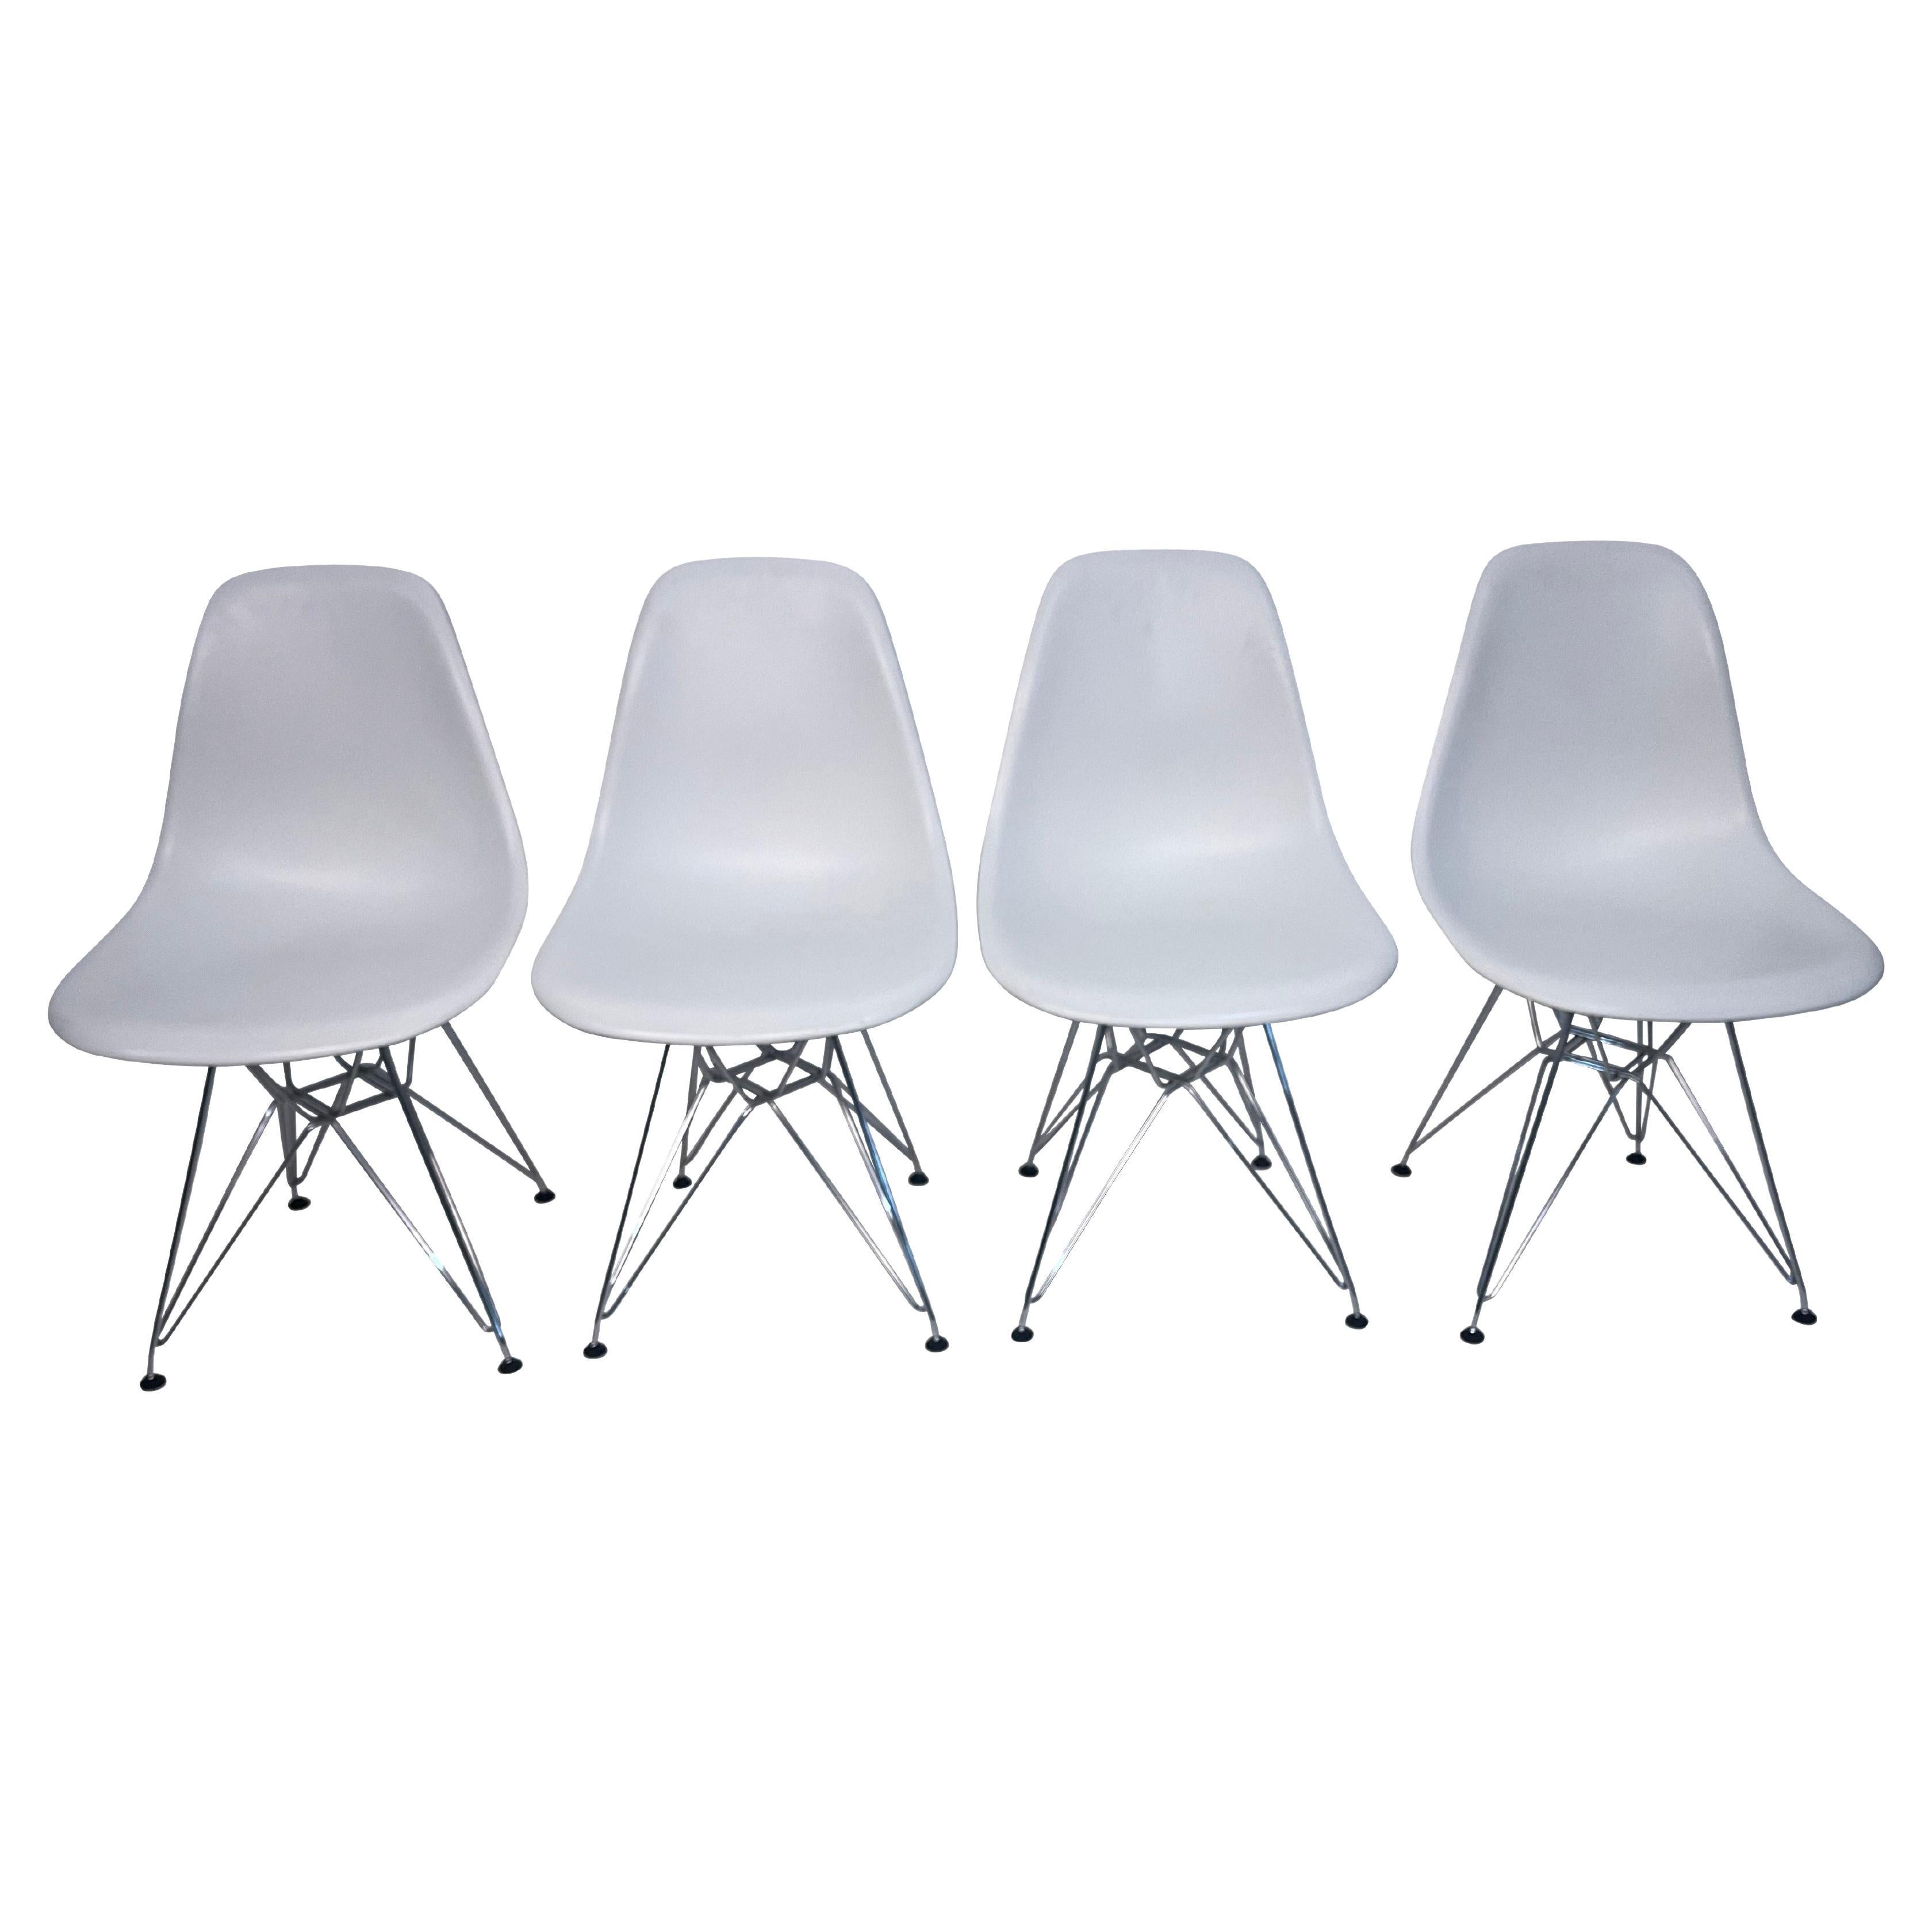 Quatre chaises Eames pour Knoll en plastique blanc moulé avec bases en forme de tour Eiffel